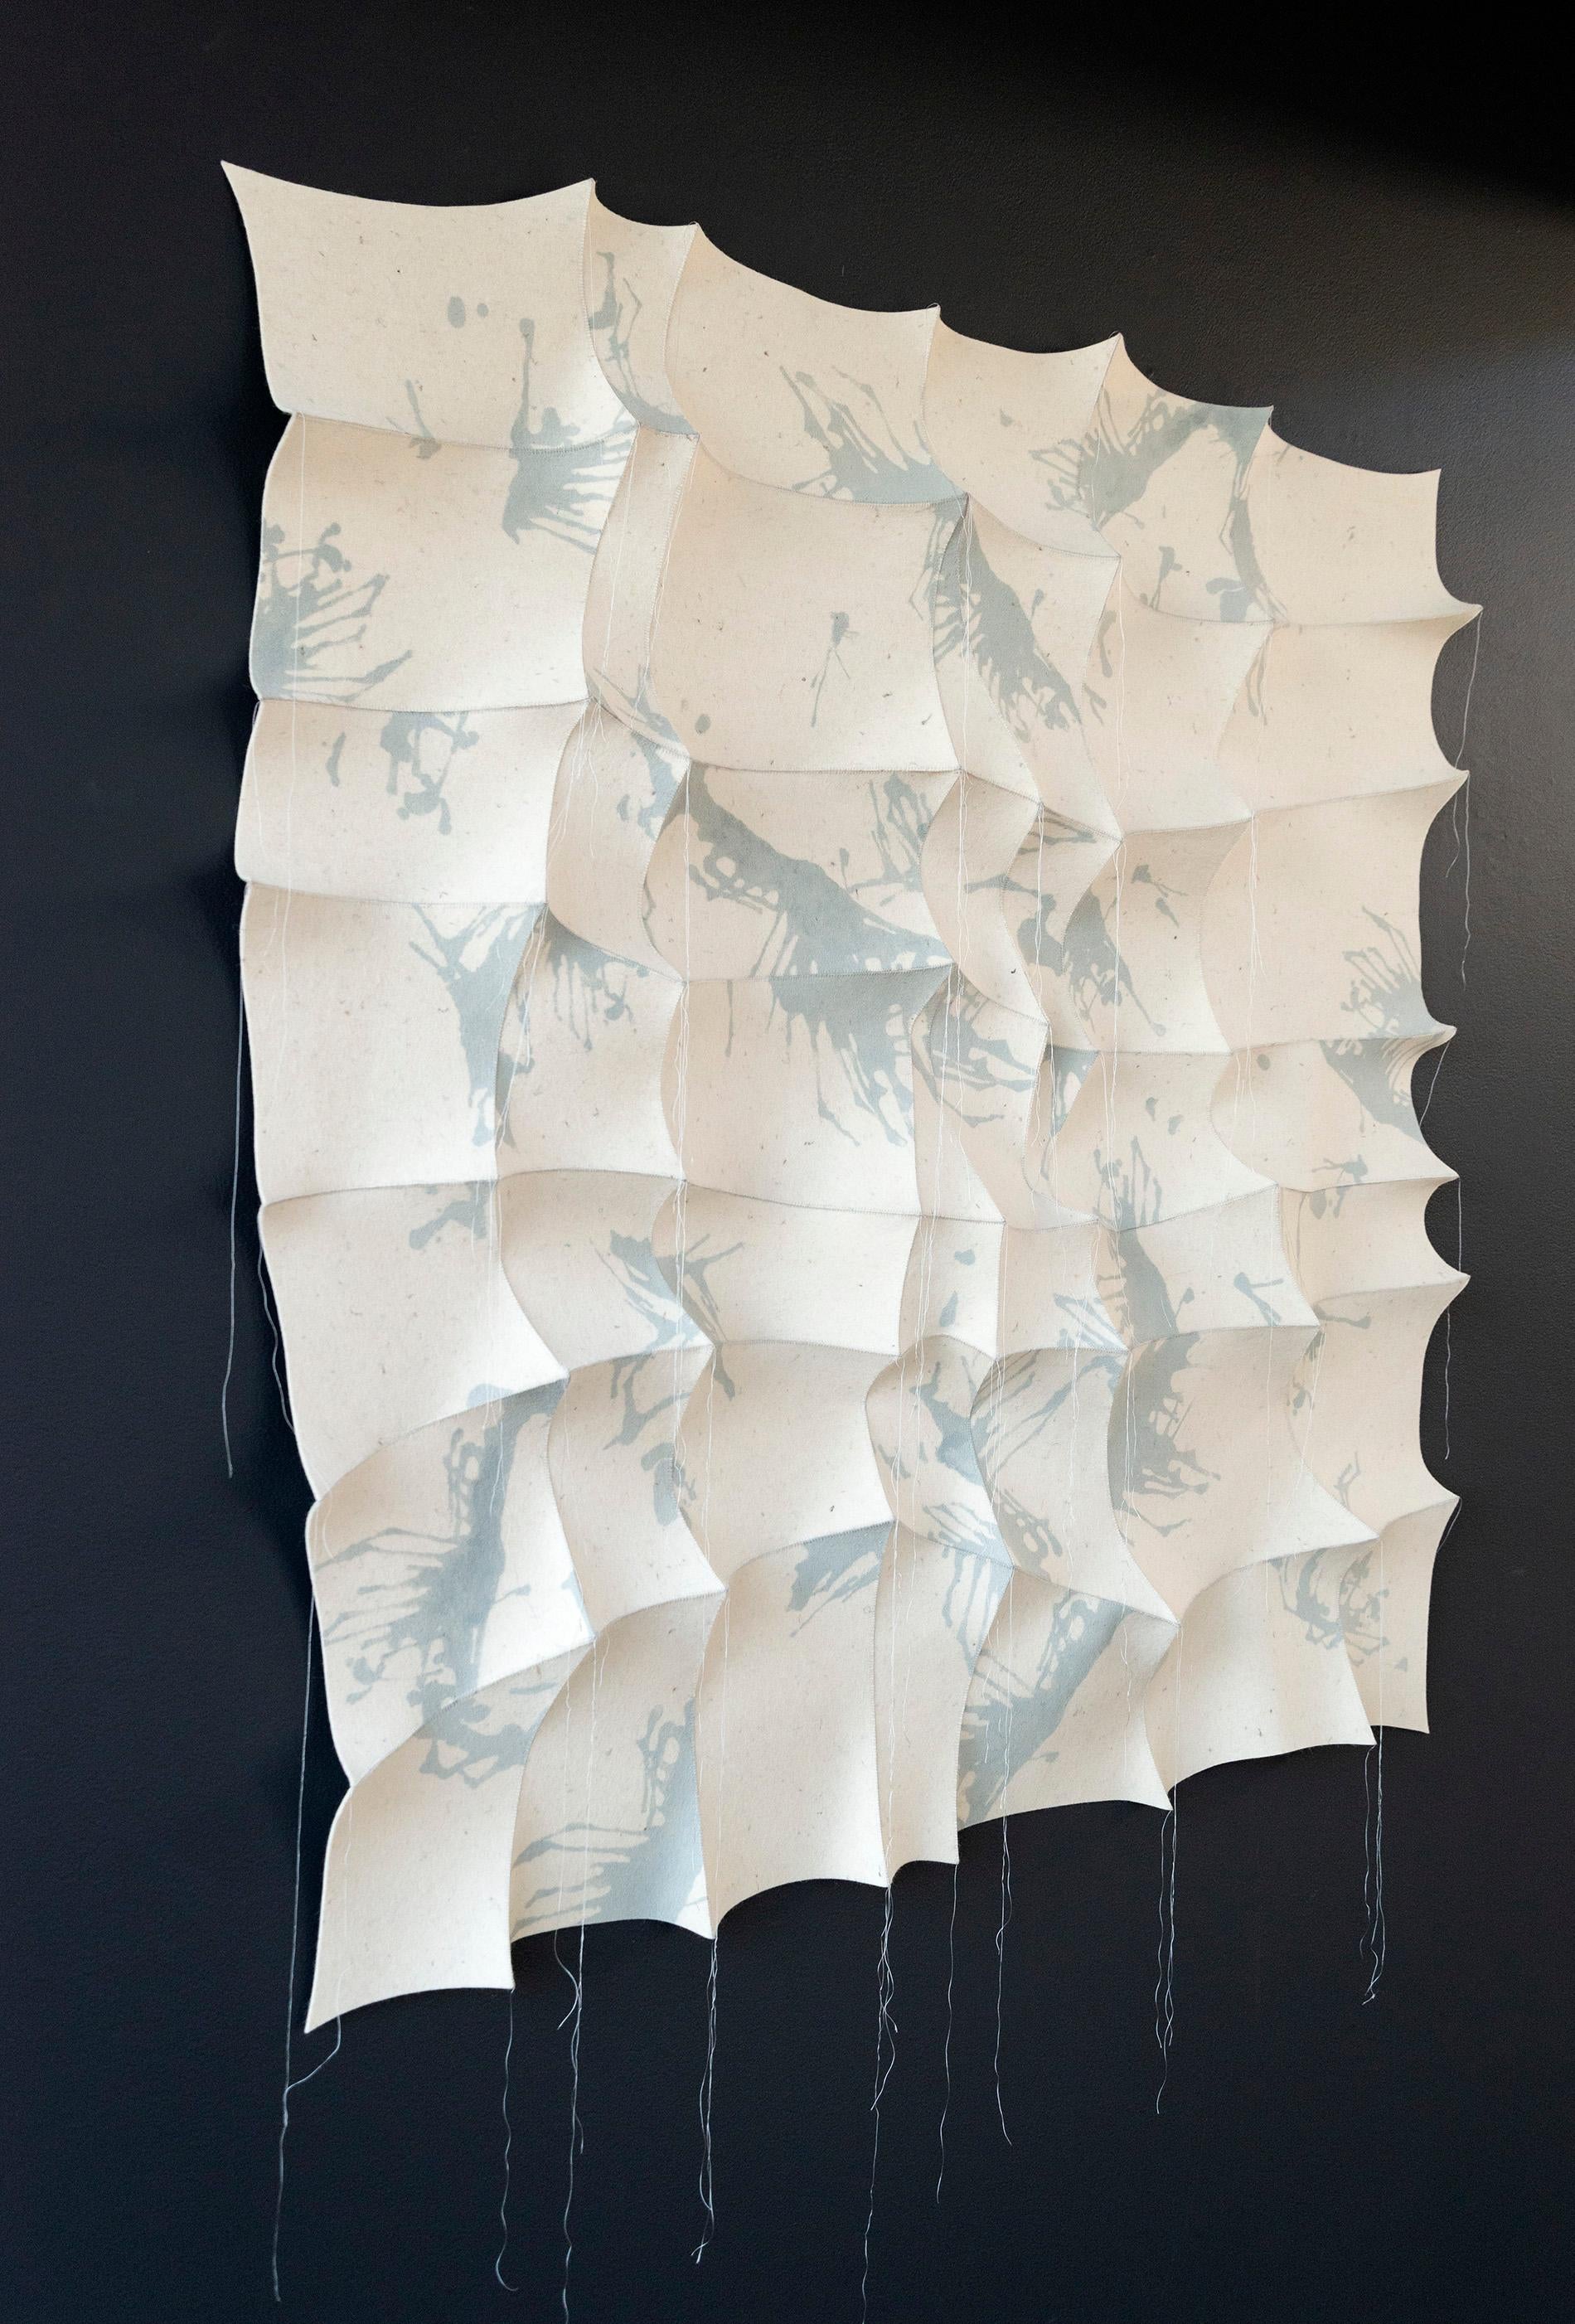 Cette tapisserie contemporaine blanche et bleu-gris a été cousue à la main par l'artiste canadien Chung-Im Kim. Inspirée par son propre héritage et par les motifs complexes que l'on trouve dans la nature, Kim utilise du feutre industriel pour créer